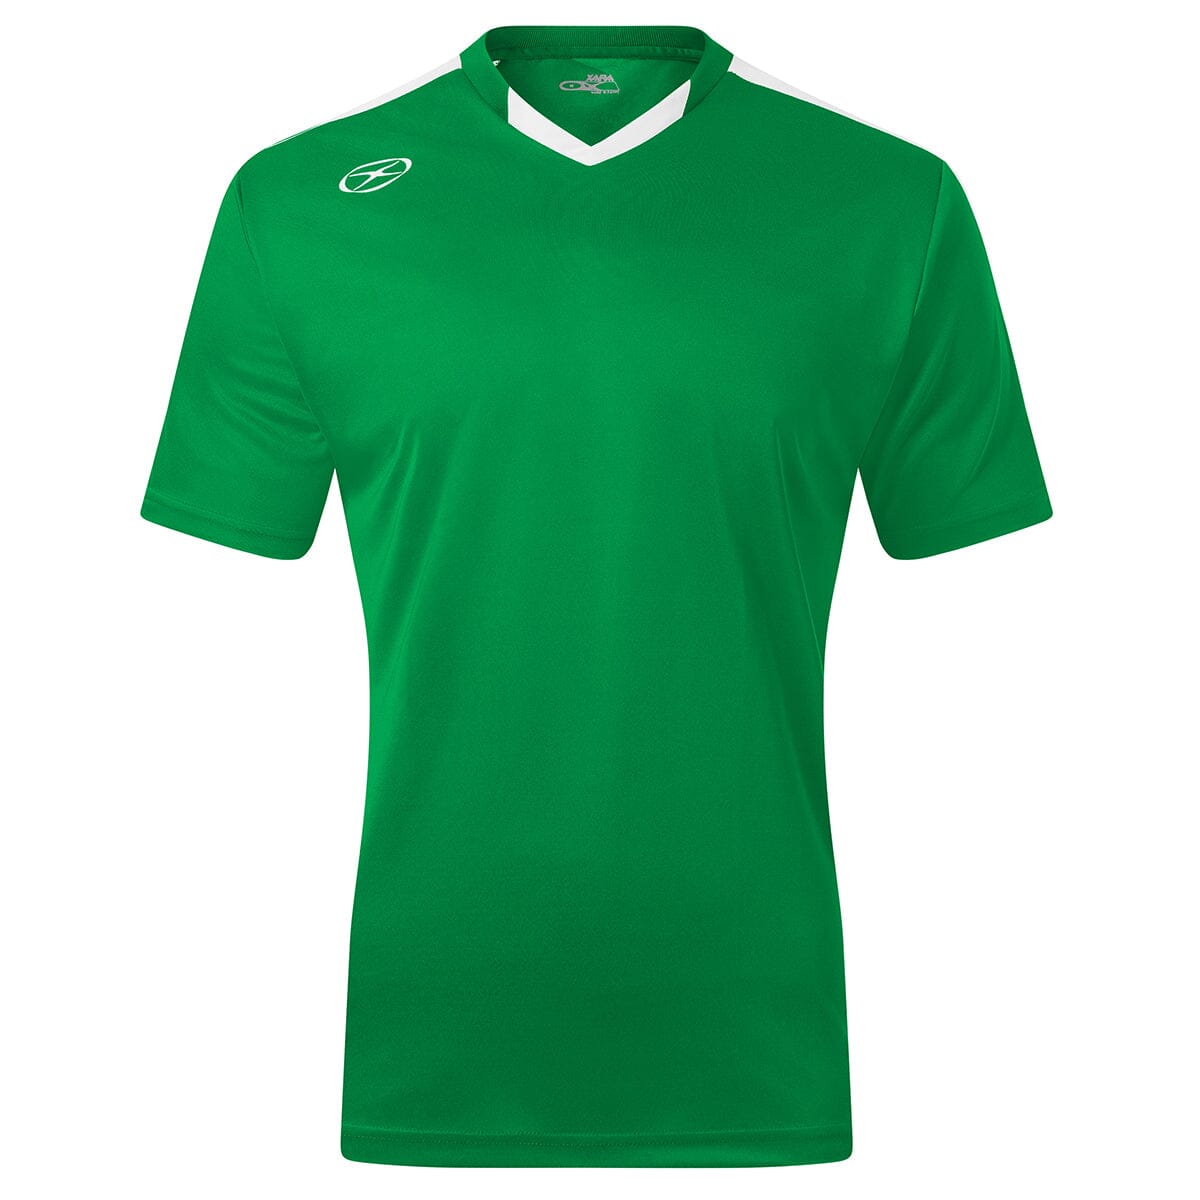 Britannia Jersey - Home Colors - Male Shirt Xara Soccer Green/White Medium 